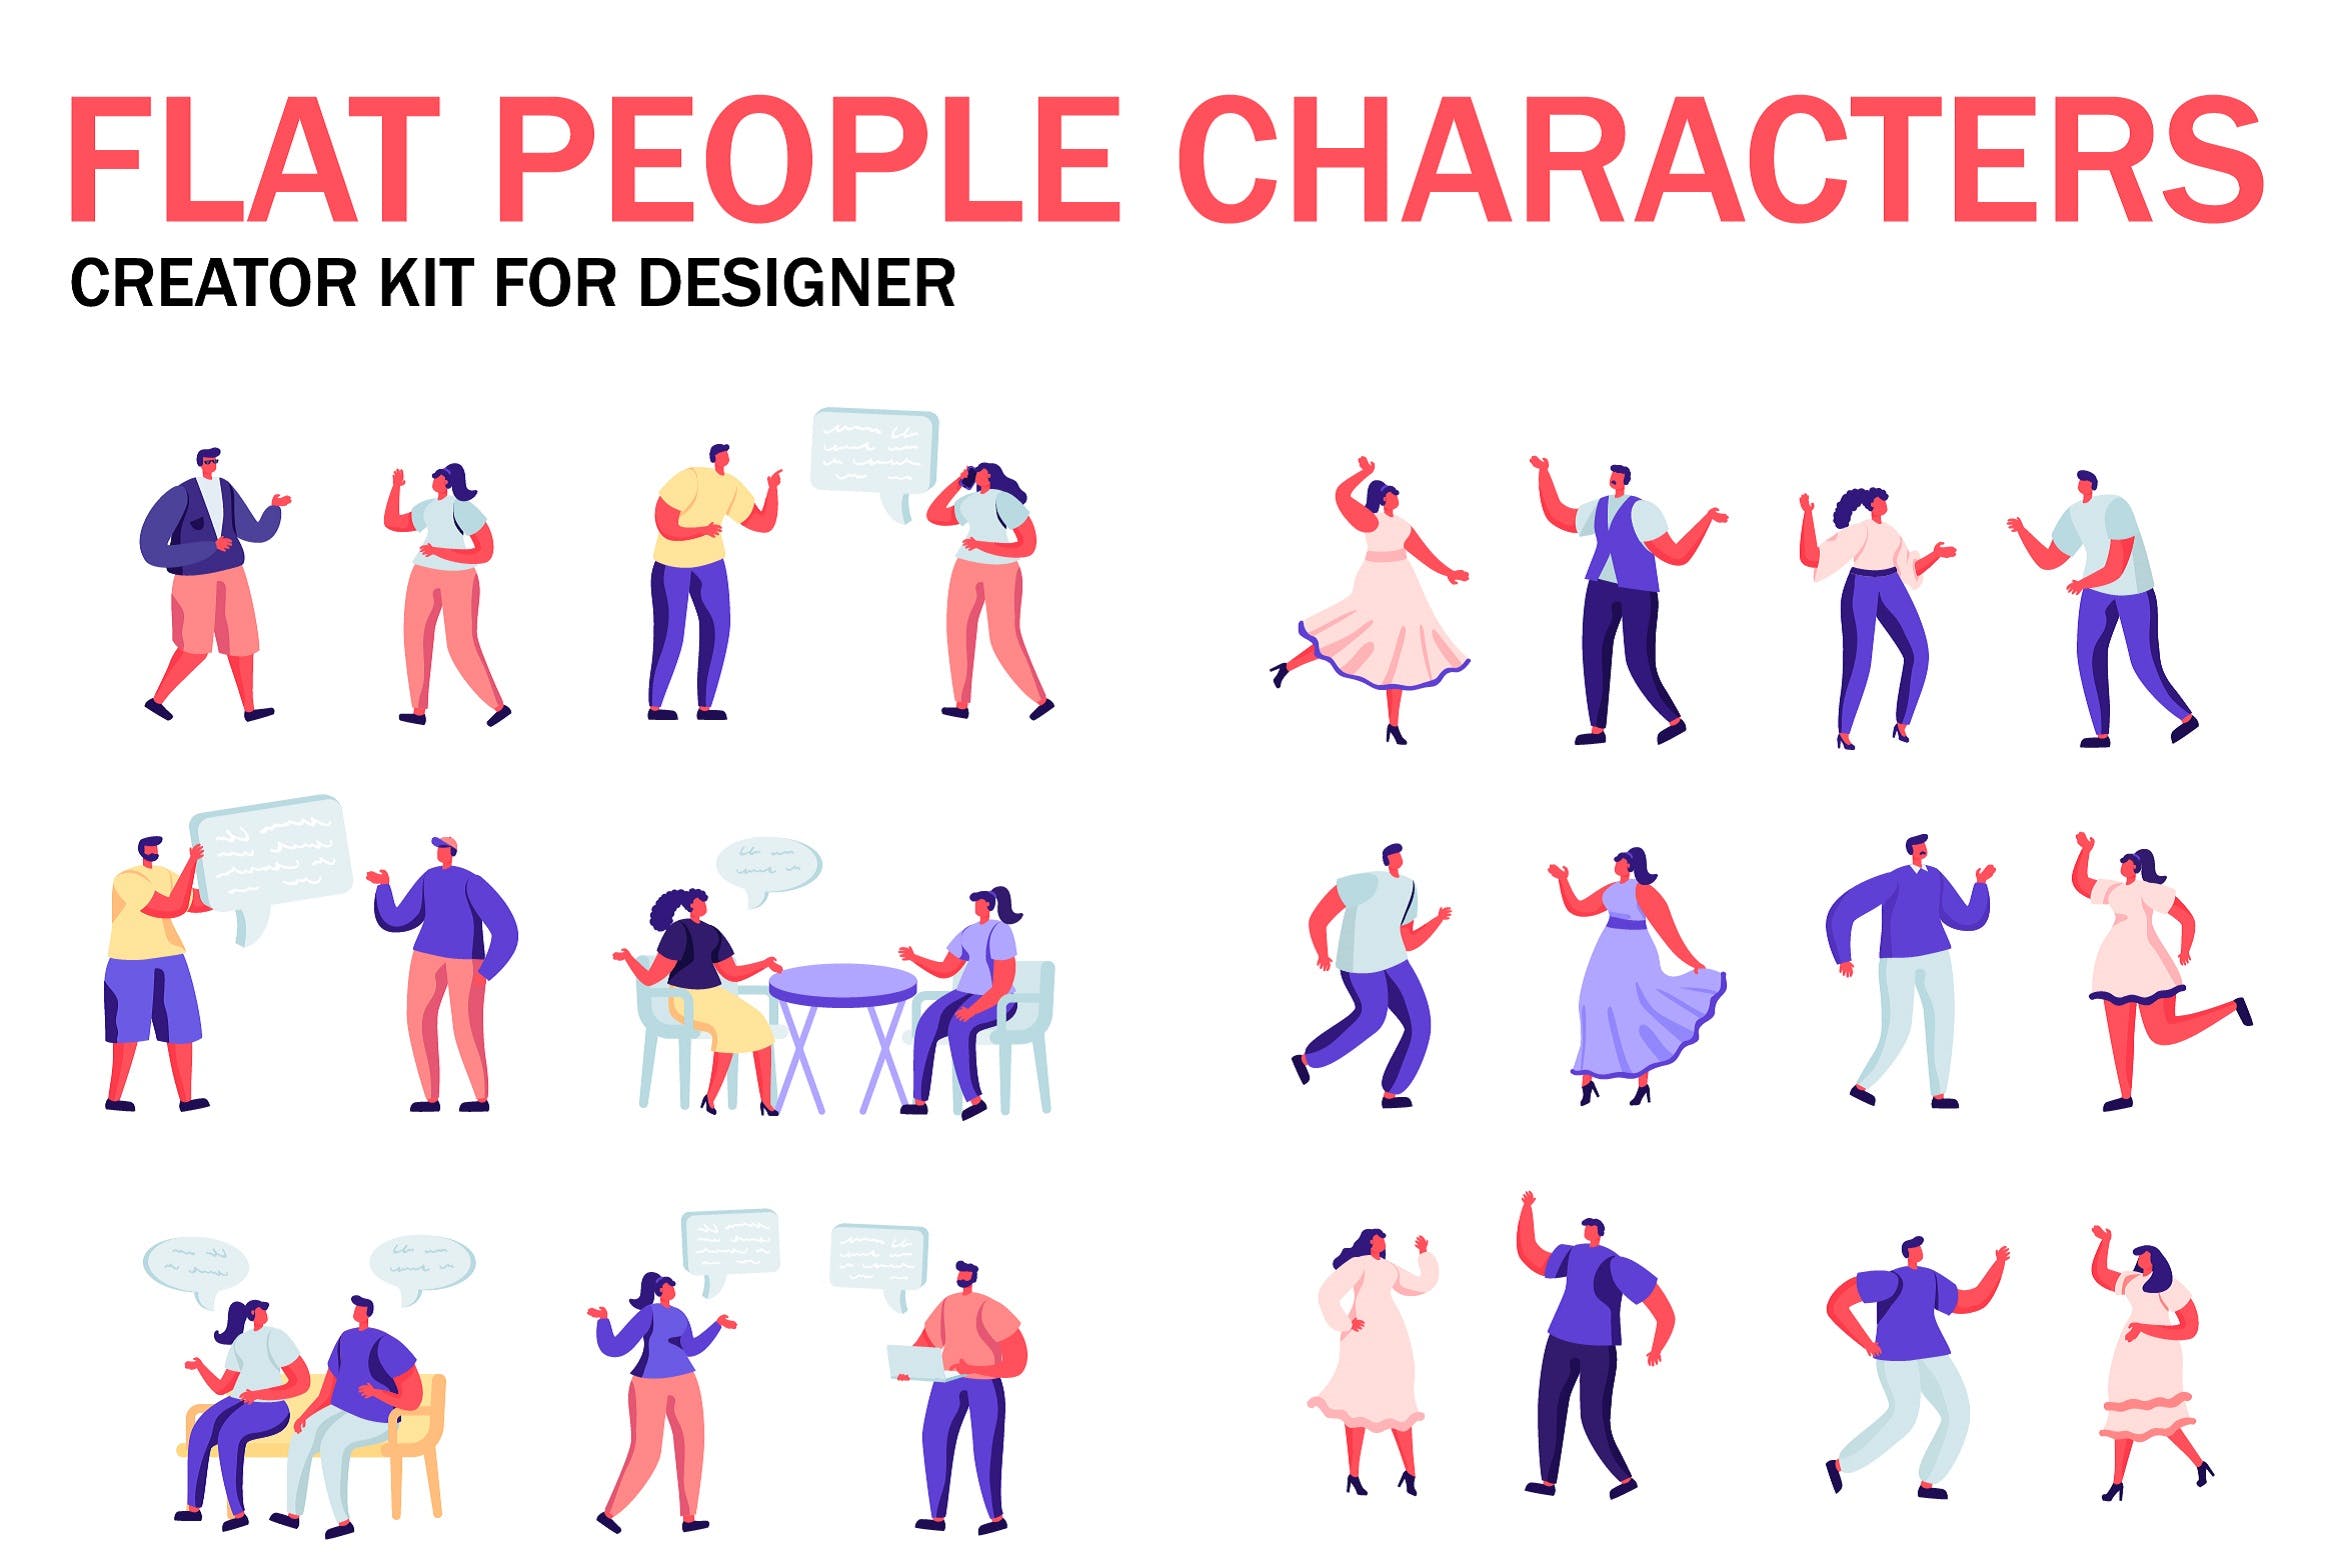 扁平化设计风格虚拟人物角色图形设计工具包v2 Flat People Character Creator Kit插图